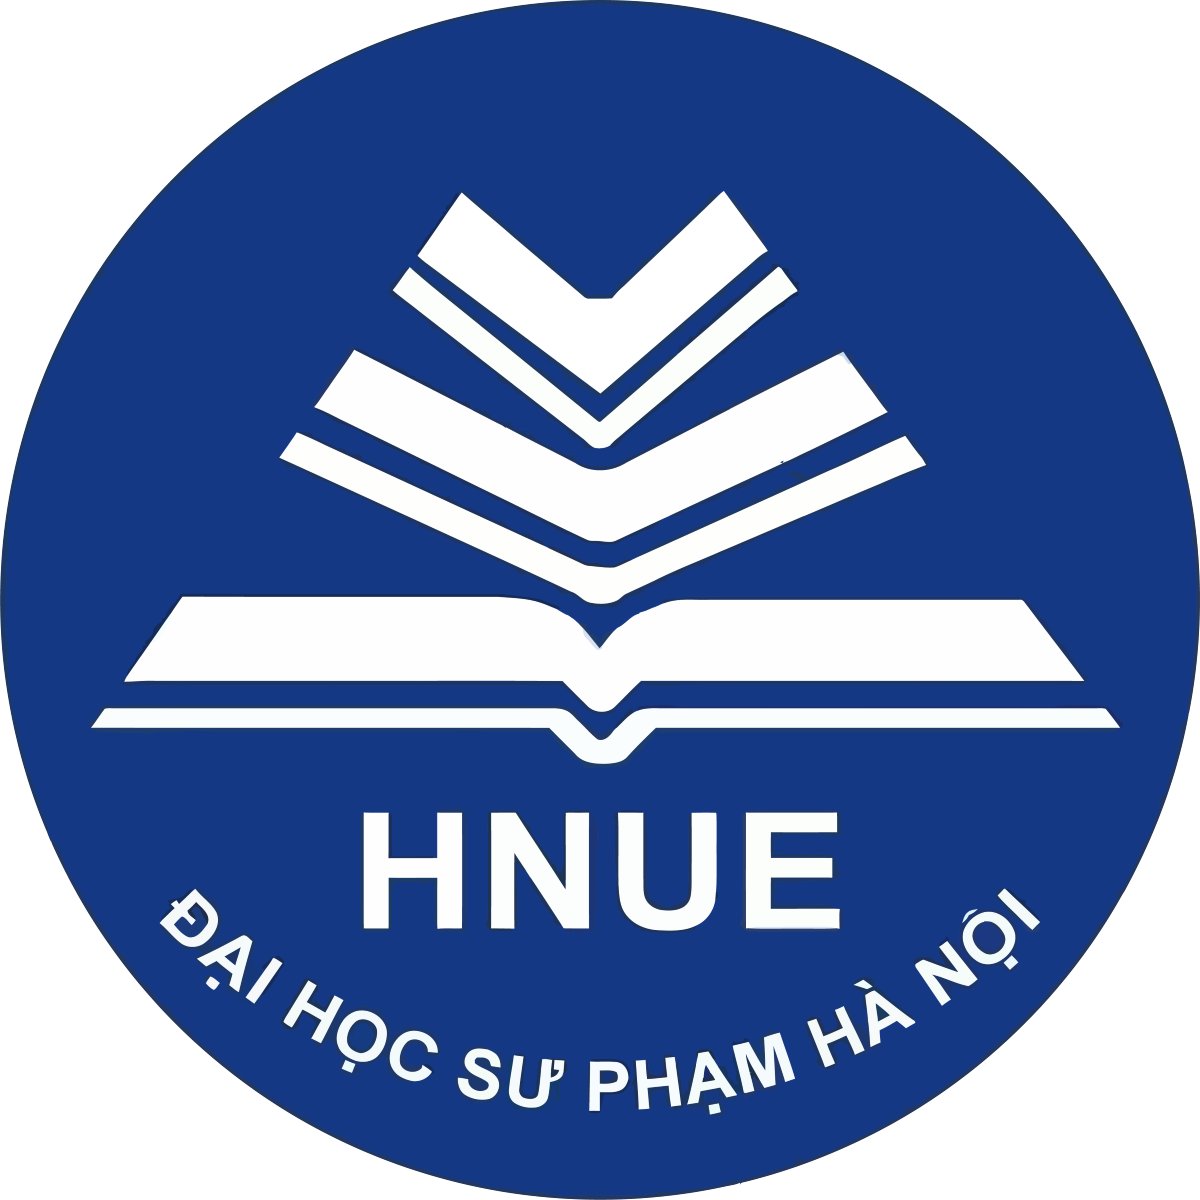 Tải HNUE logo, logo Đại học Sư phạm Hà Nội file vector, AI, EPS ...